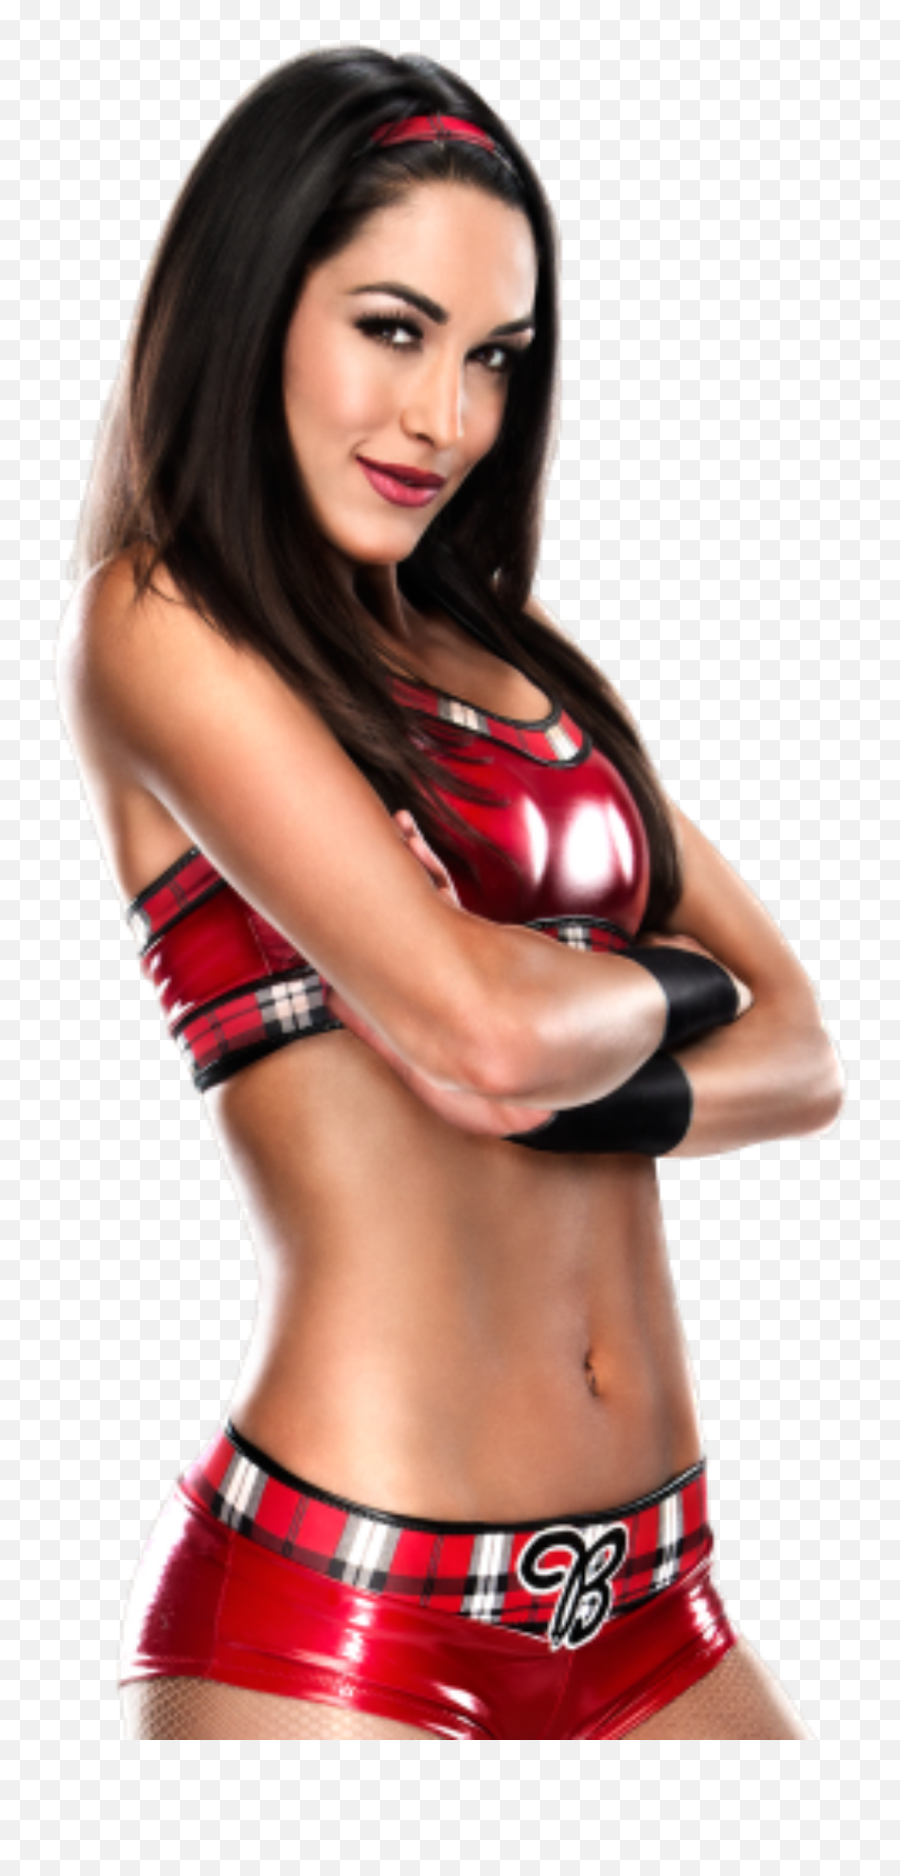 Download Report Abuse - Wwe Diva Brie Bella Png,Nikki Bella Png